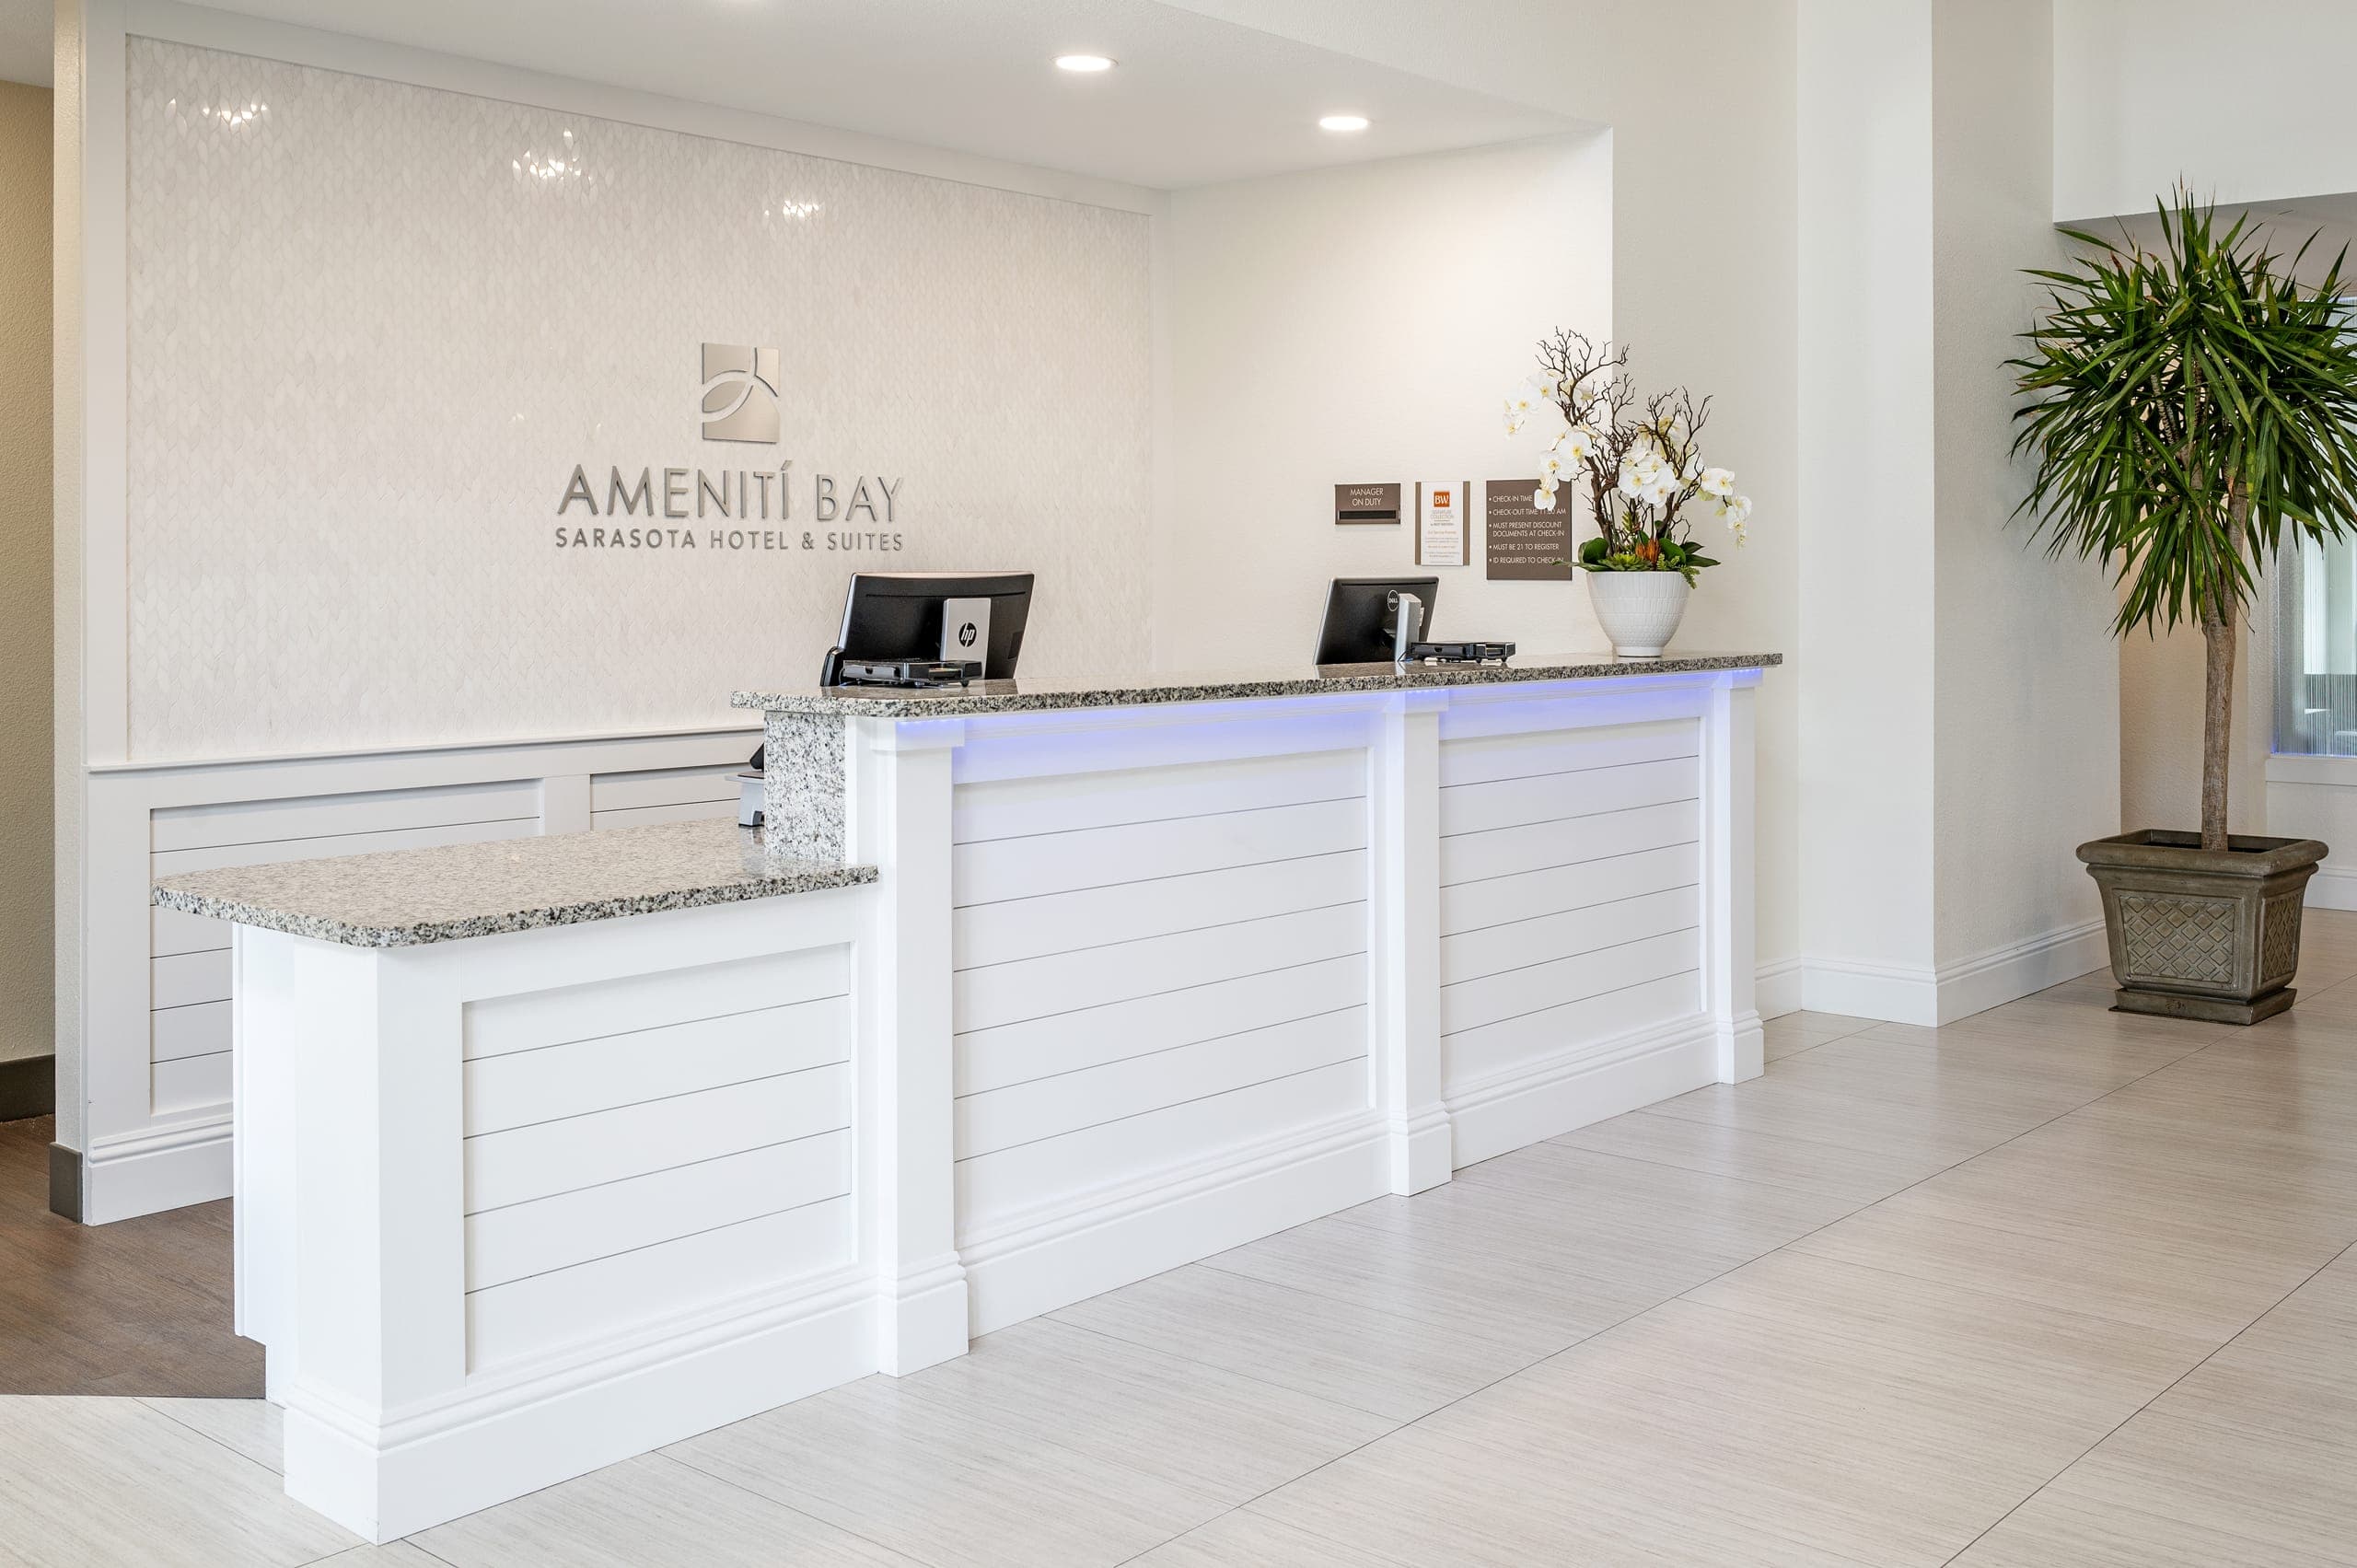 Ameniti Bay Hotel Lobby White Reception Desk